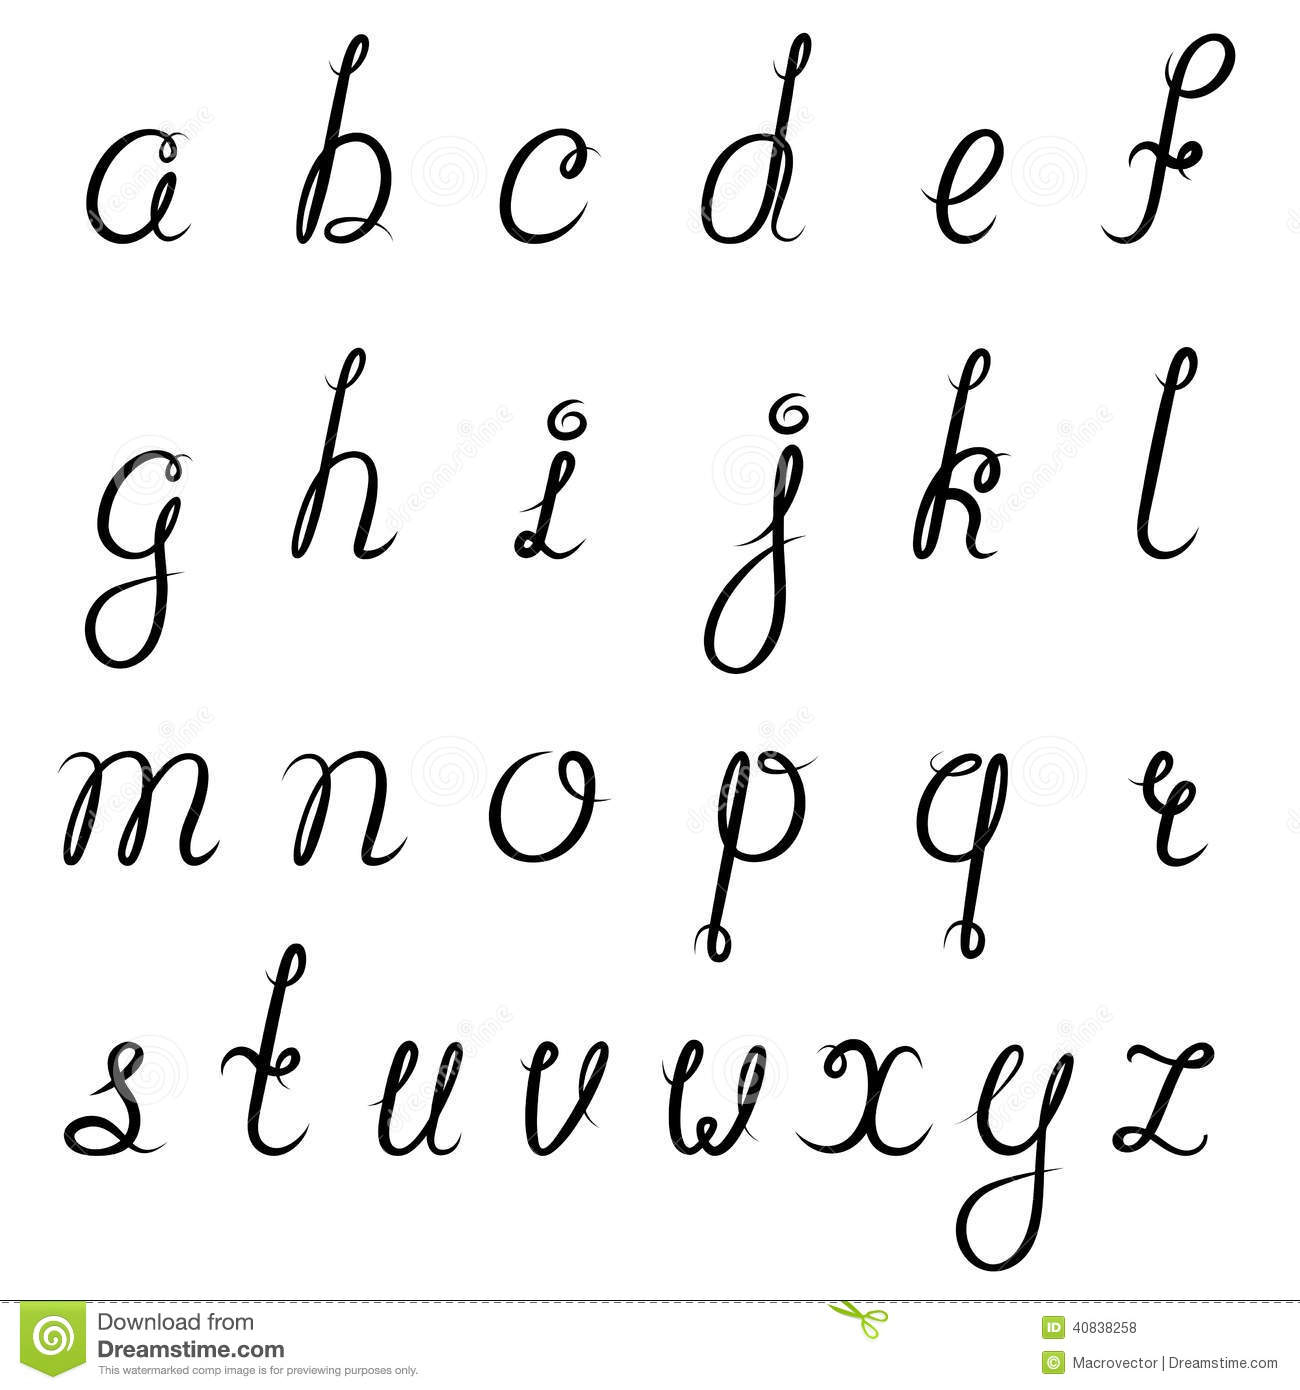 L'alphabet Cursive Minuscule | AlphabetWorksheetsFree.com